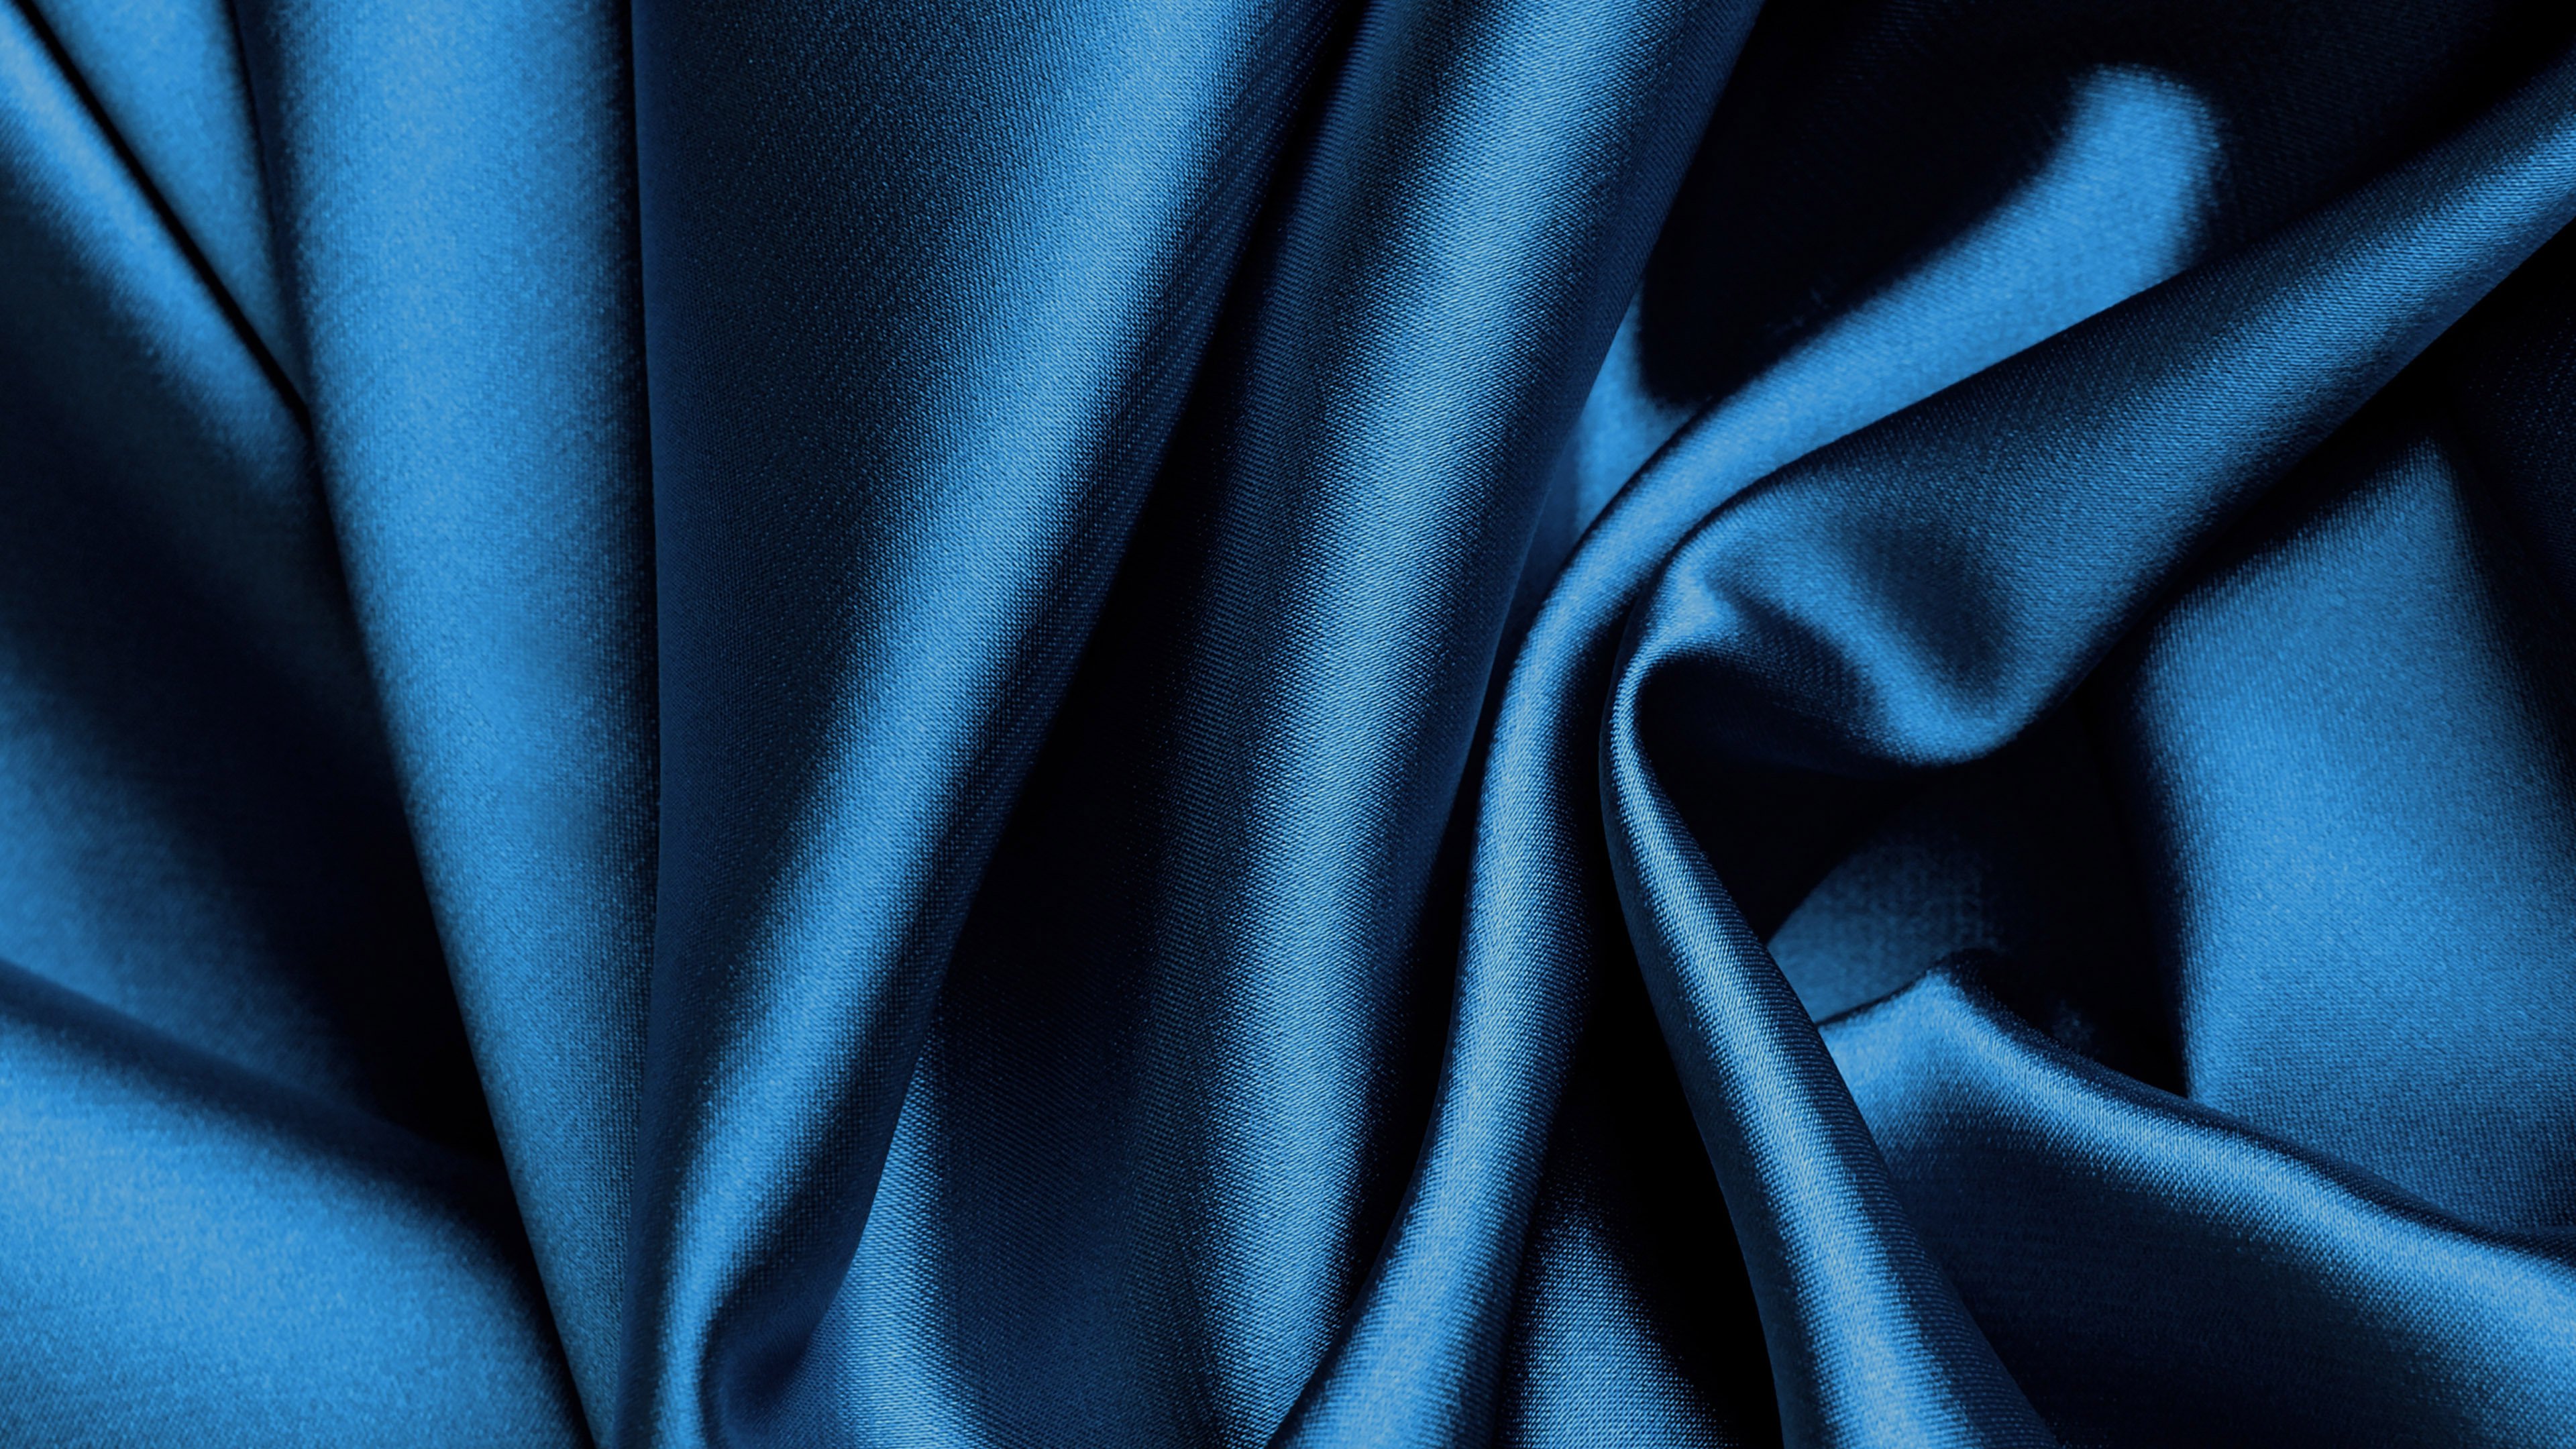 丝绸, 缎面, 黑色的, 电蓝色的, 钴蓝色的 壁纸 3840x2160 允许